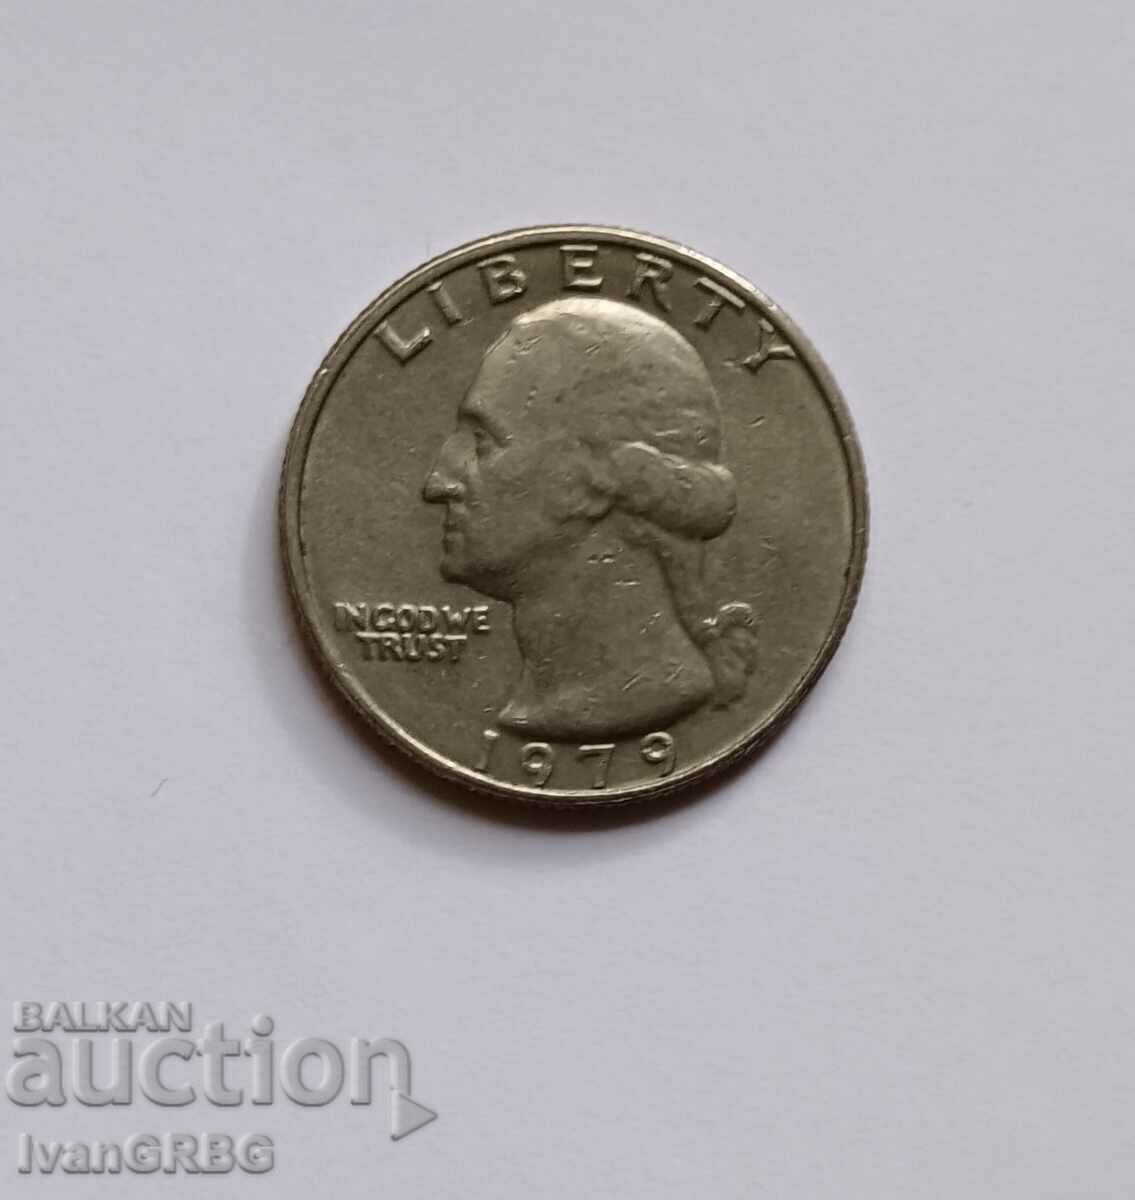 1/4 Δολάριο ΗΠΑ 1979 25 σεντ Αμερική 1979 Κέρμα 1/4 $ ΗΠΑ